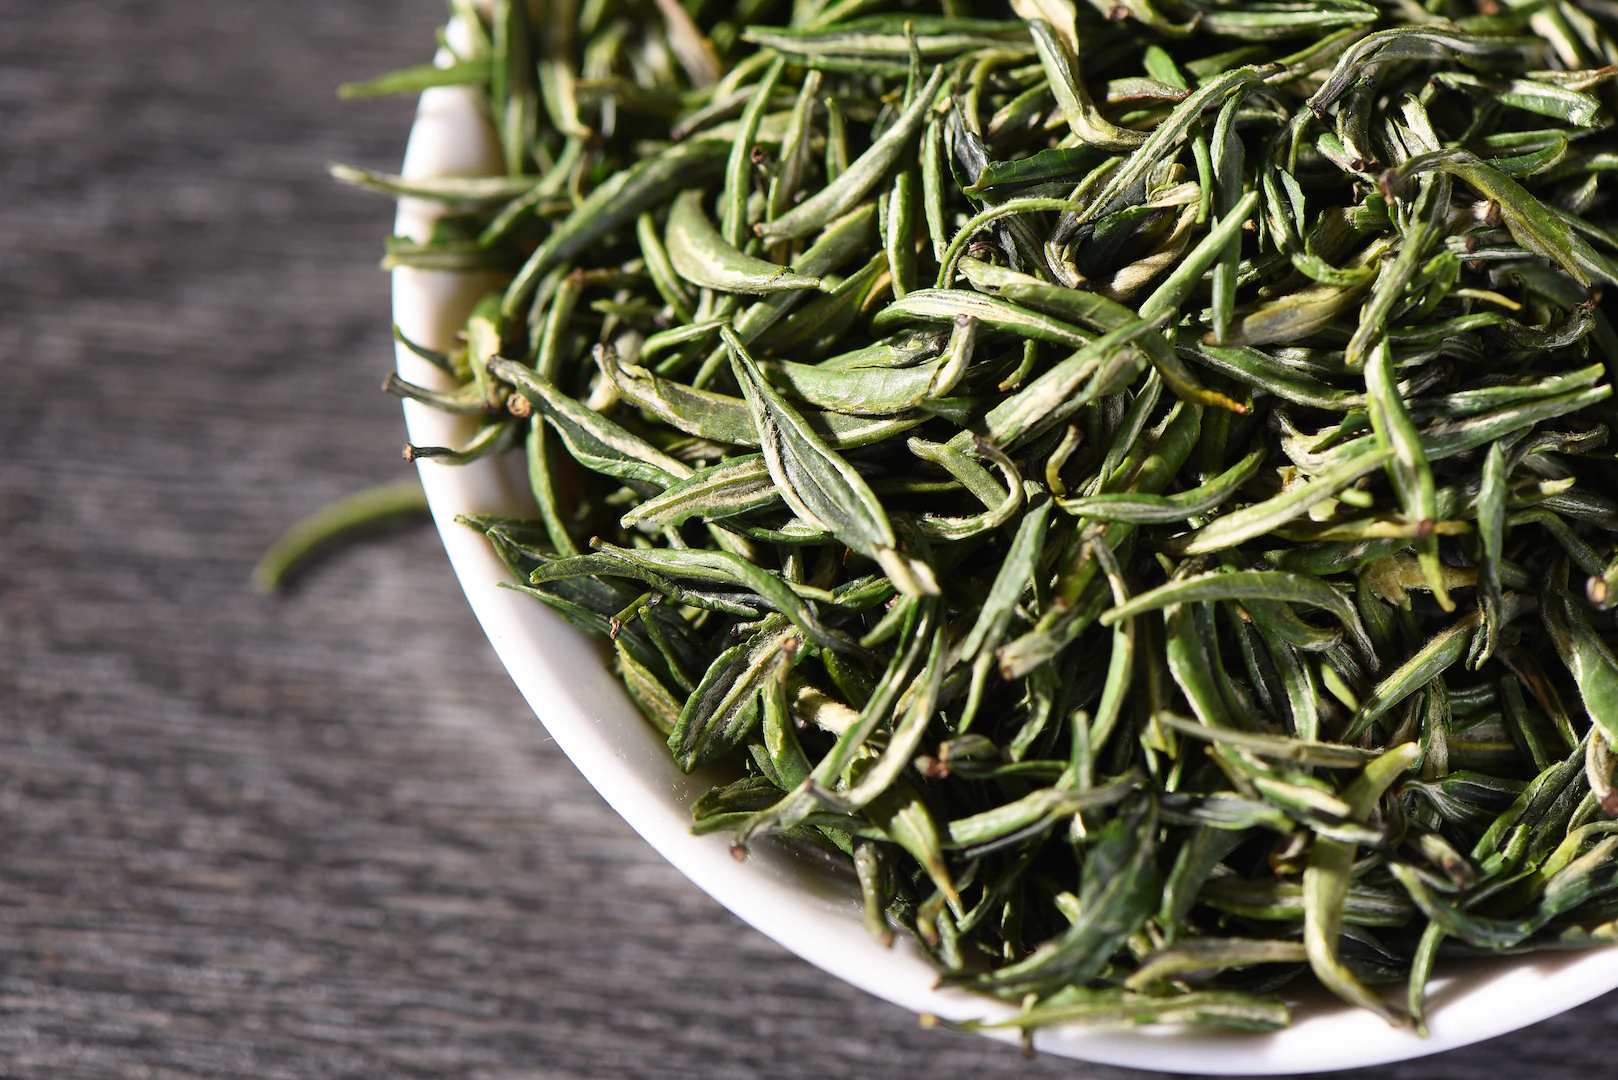 Kolor herbaty często jest odznaką jakości lub identyfikatorem rodzaju herbaty – ma przykład sam wygład naparu japońskiej mocno parowanej zielonej herbaty już dużo mówi. Właśnie o kolorze herbat zielonych i chciałbym opowiedzieć w tym artykule.